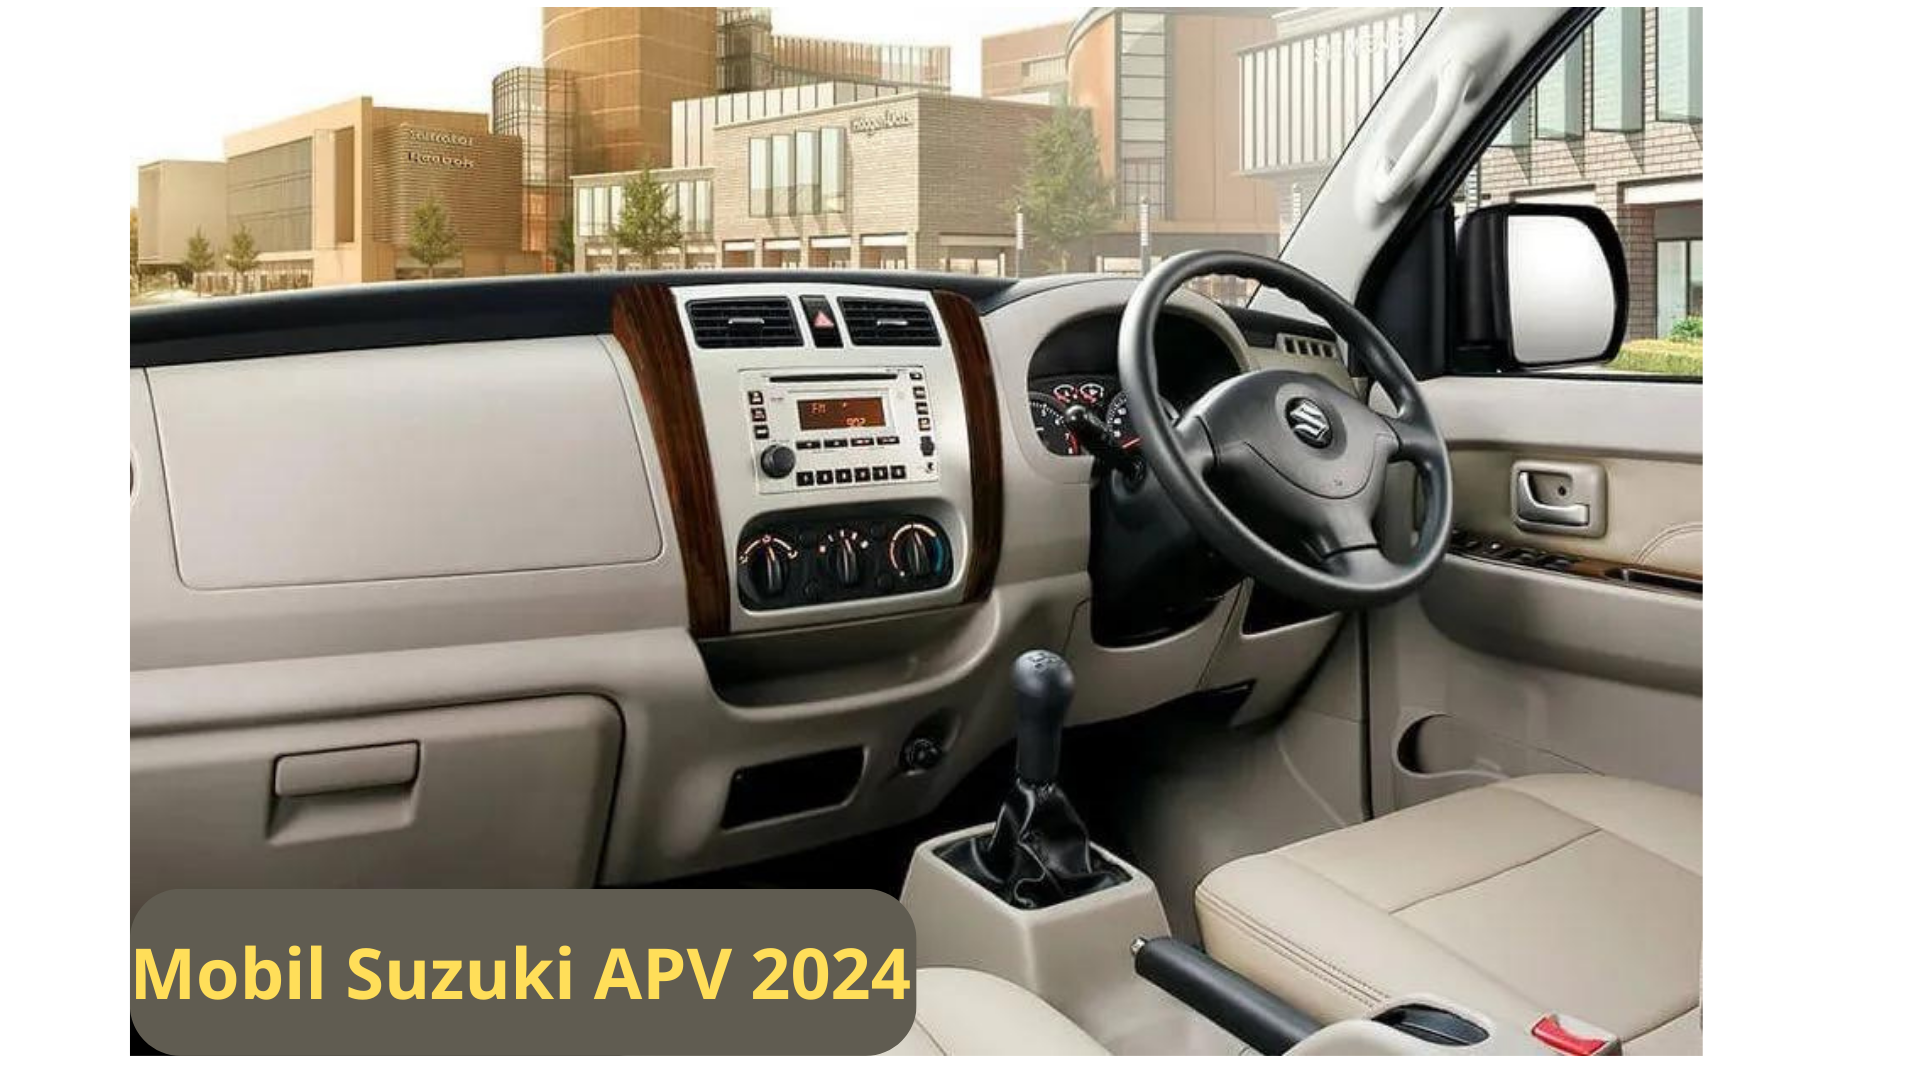 Muat 9 Orang, SUV Mewah Mobil Suzuki APV 2024 yang Cukup Mengejutkan